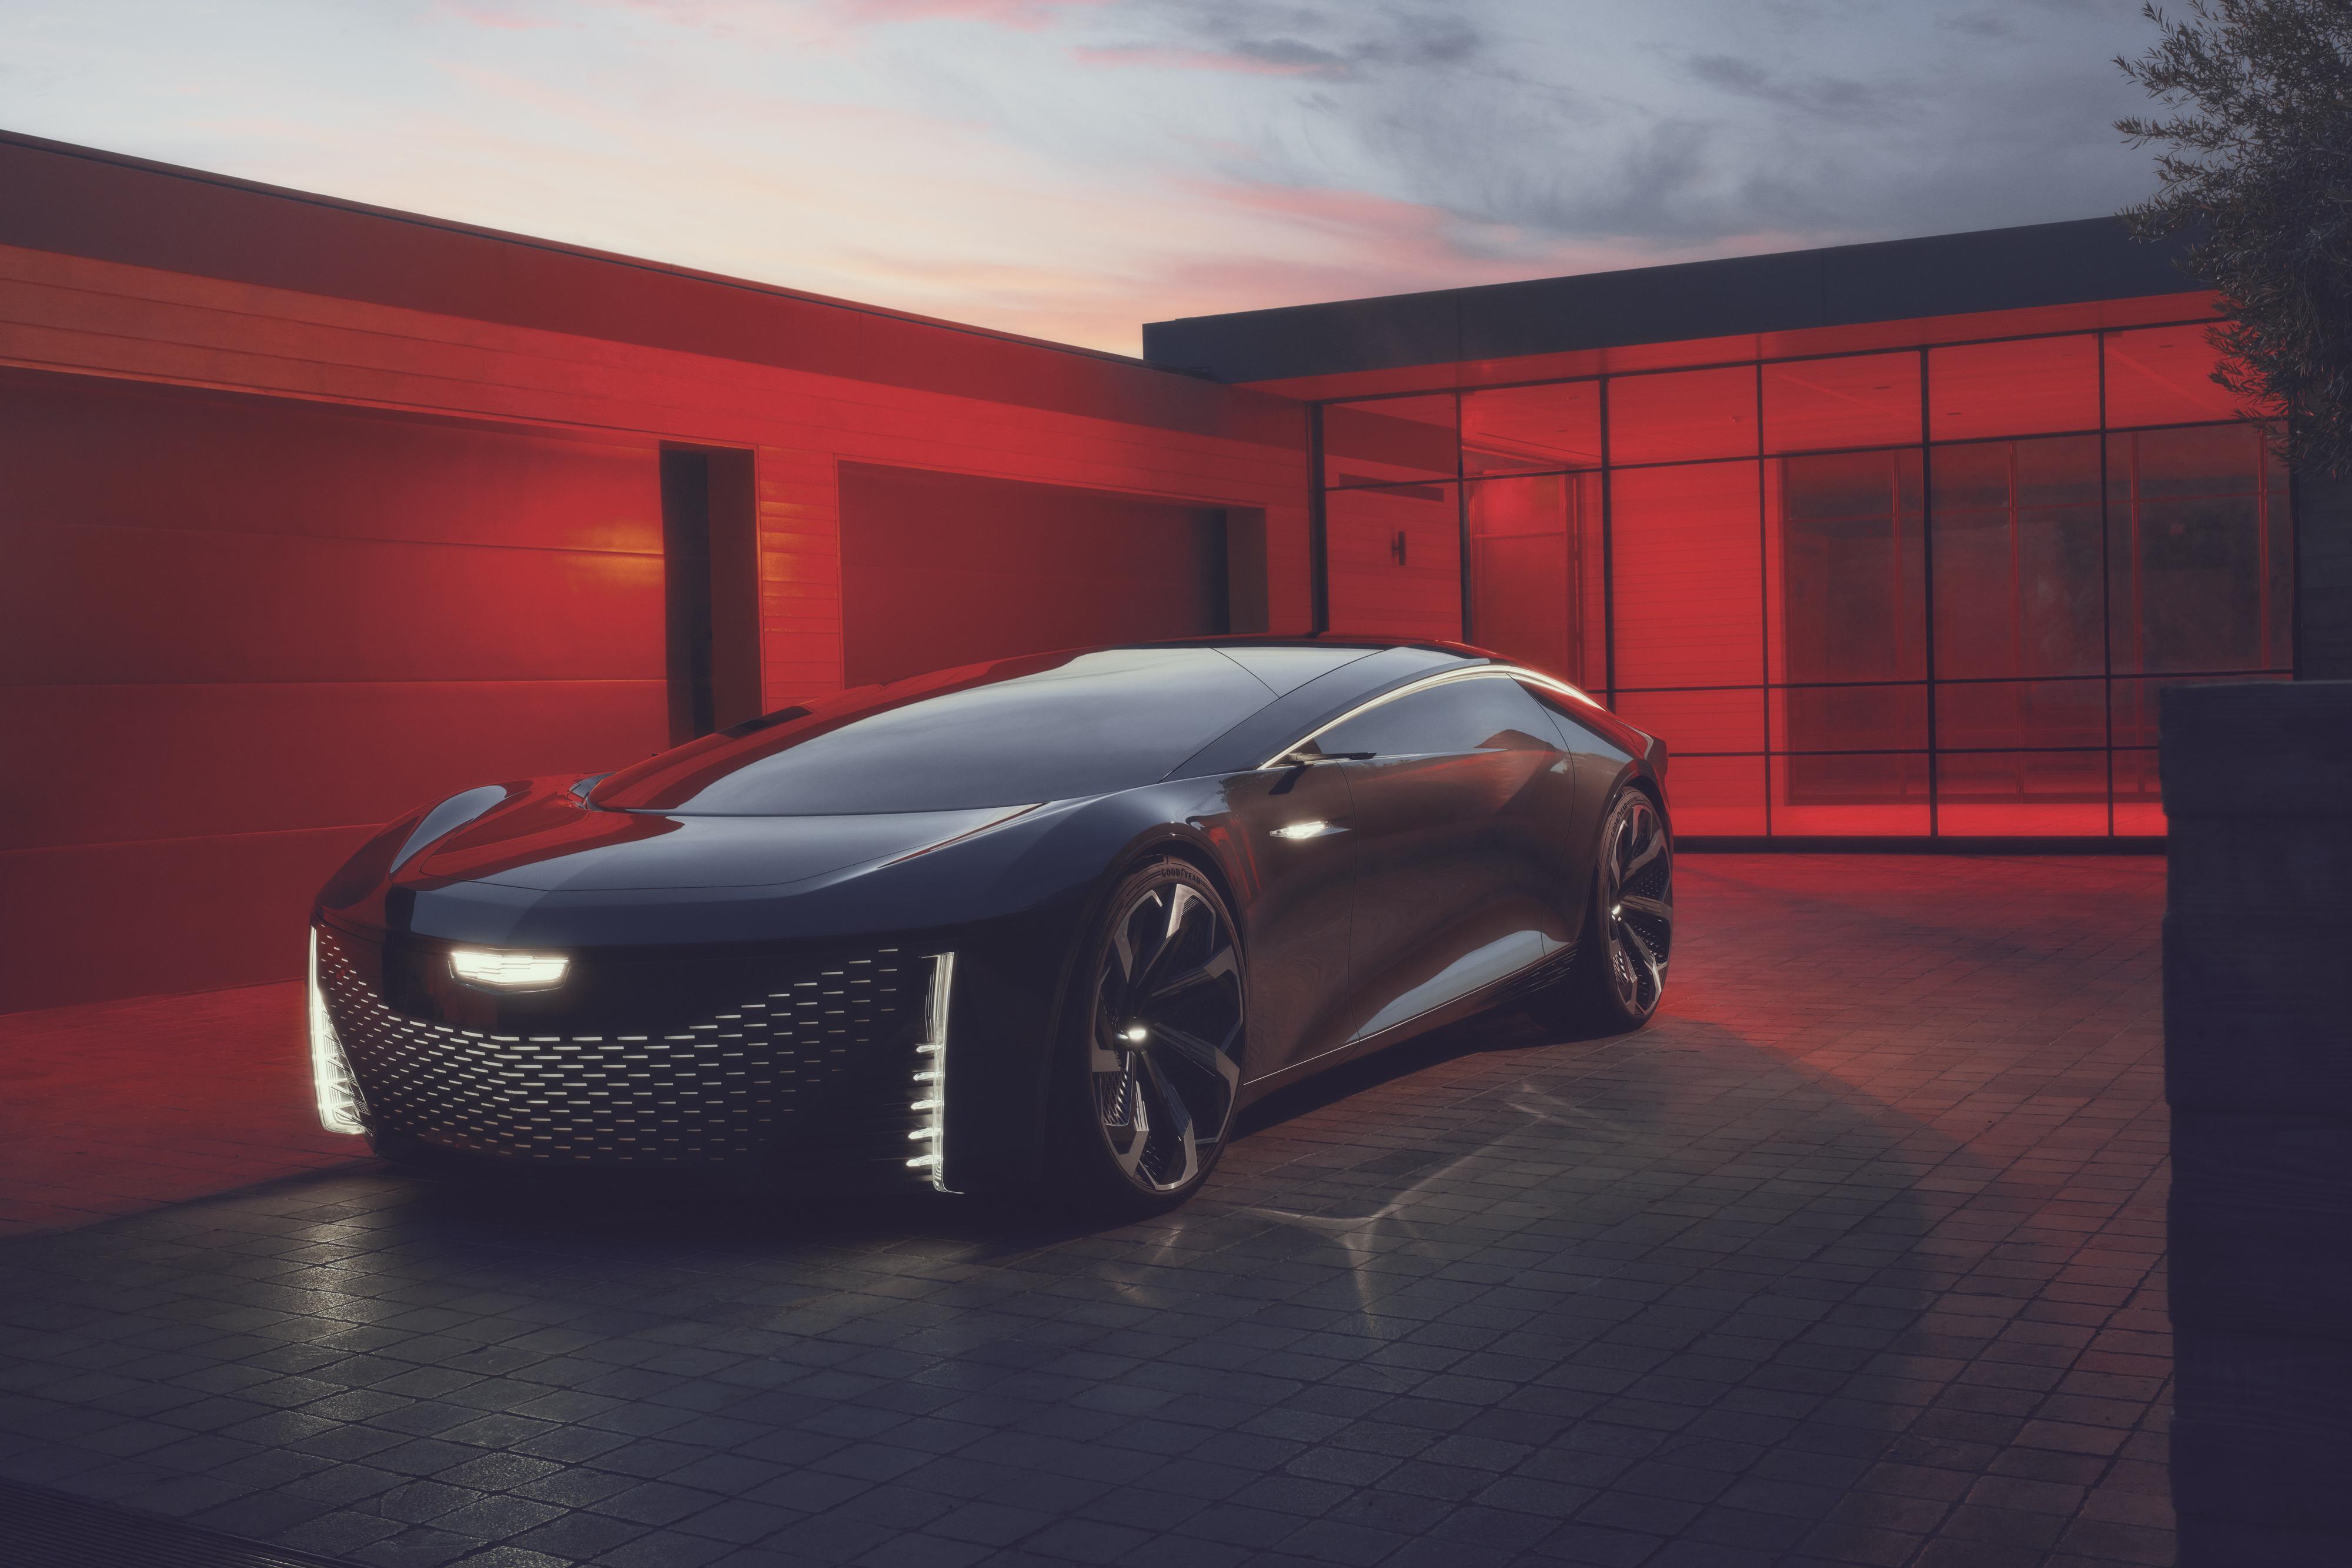 Cadillac unveils luxury concept vehicle for autonomous driving thumbnail